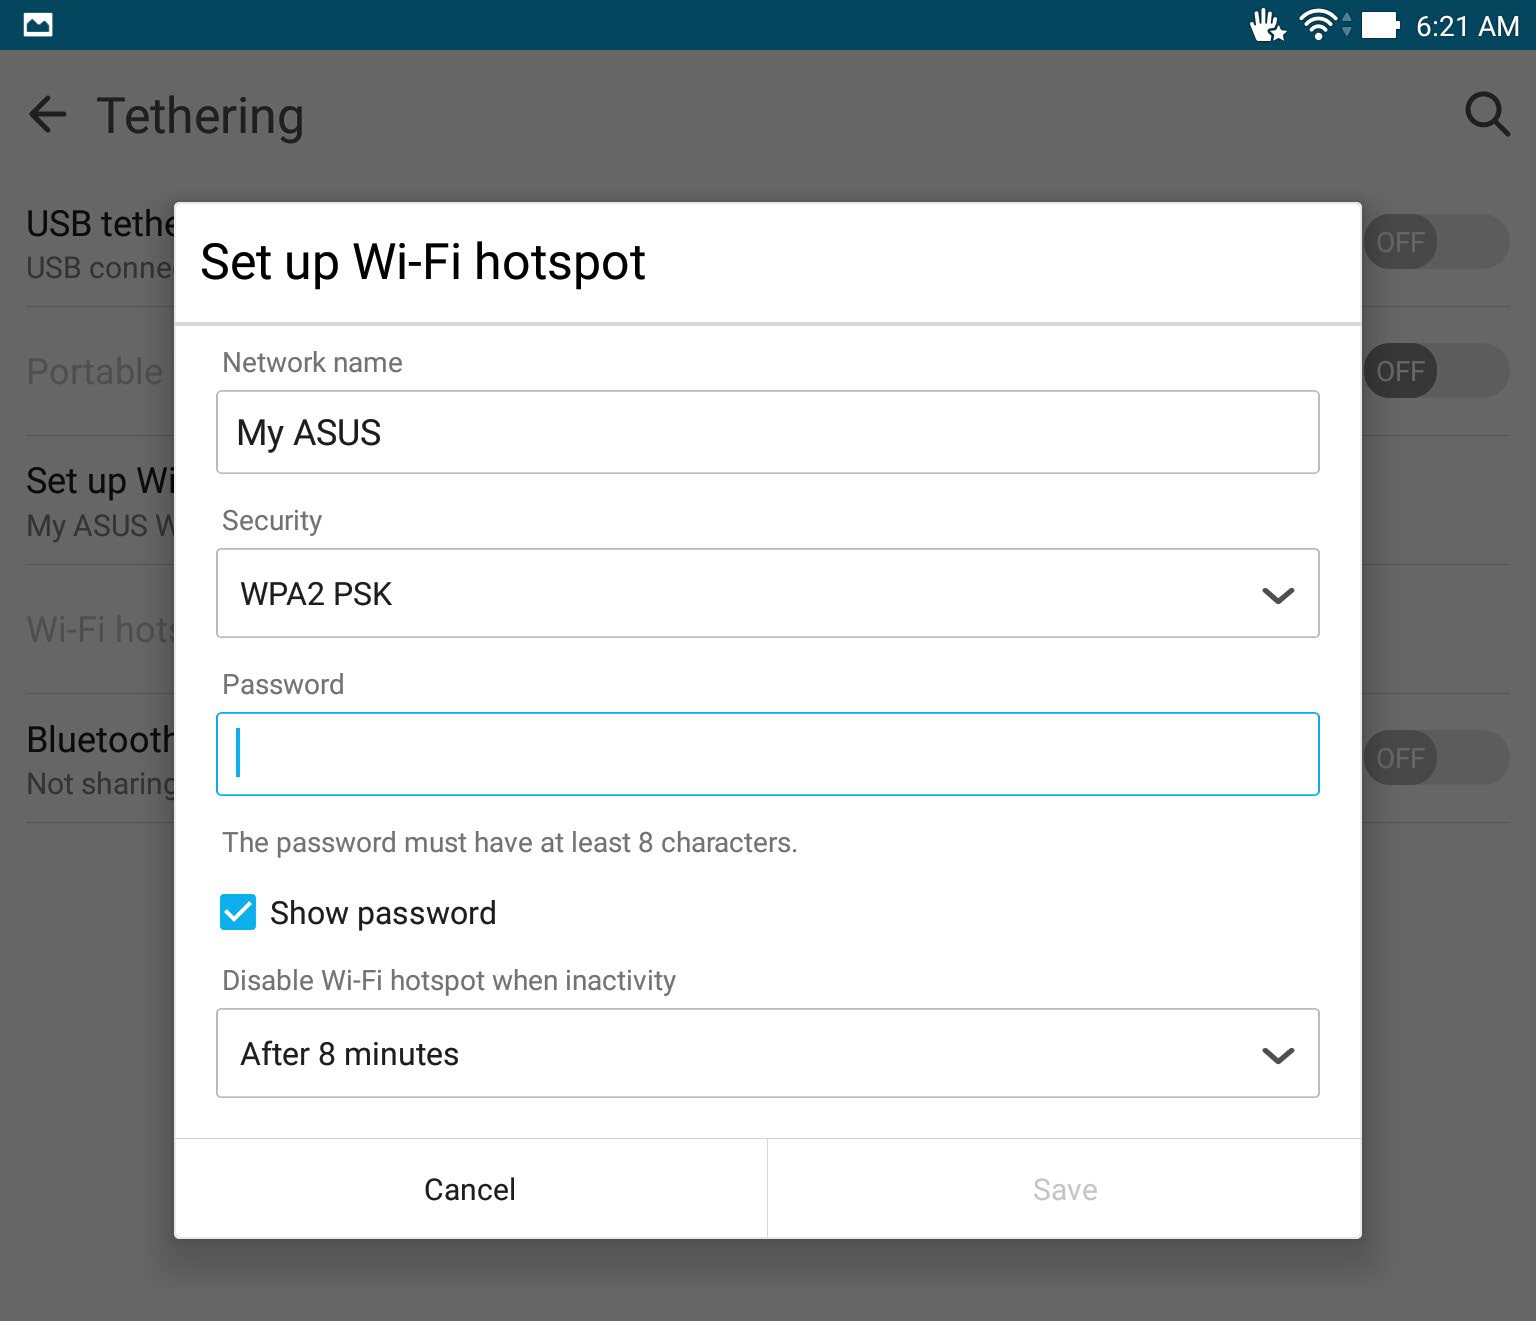 Κοινή σύνδεση Όταν δεν υπάρχει διαθέσιμη υπηρεσία Wi-Fi, μπορείτε να χρησιμοποιήσετε το ASUS Tablet σας σαν μόντεμ ή να το μετατρέψετε σε Wi-Fi hotspot για να αποκτήσετε πρόσβαση διαδικτύου στον